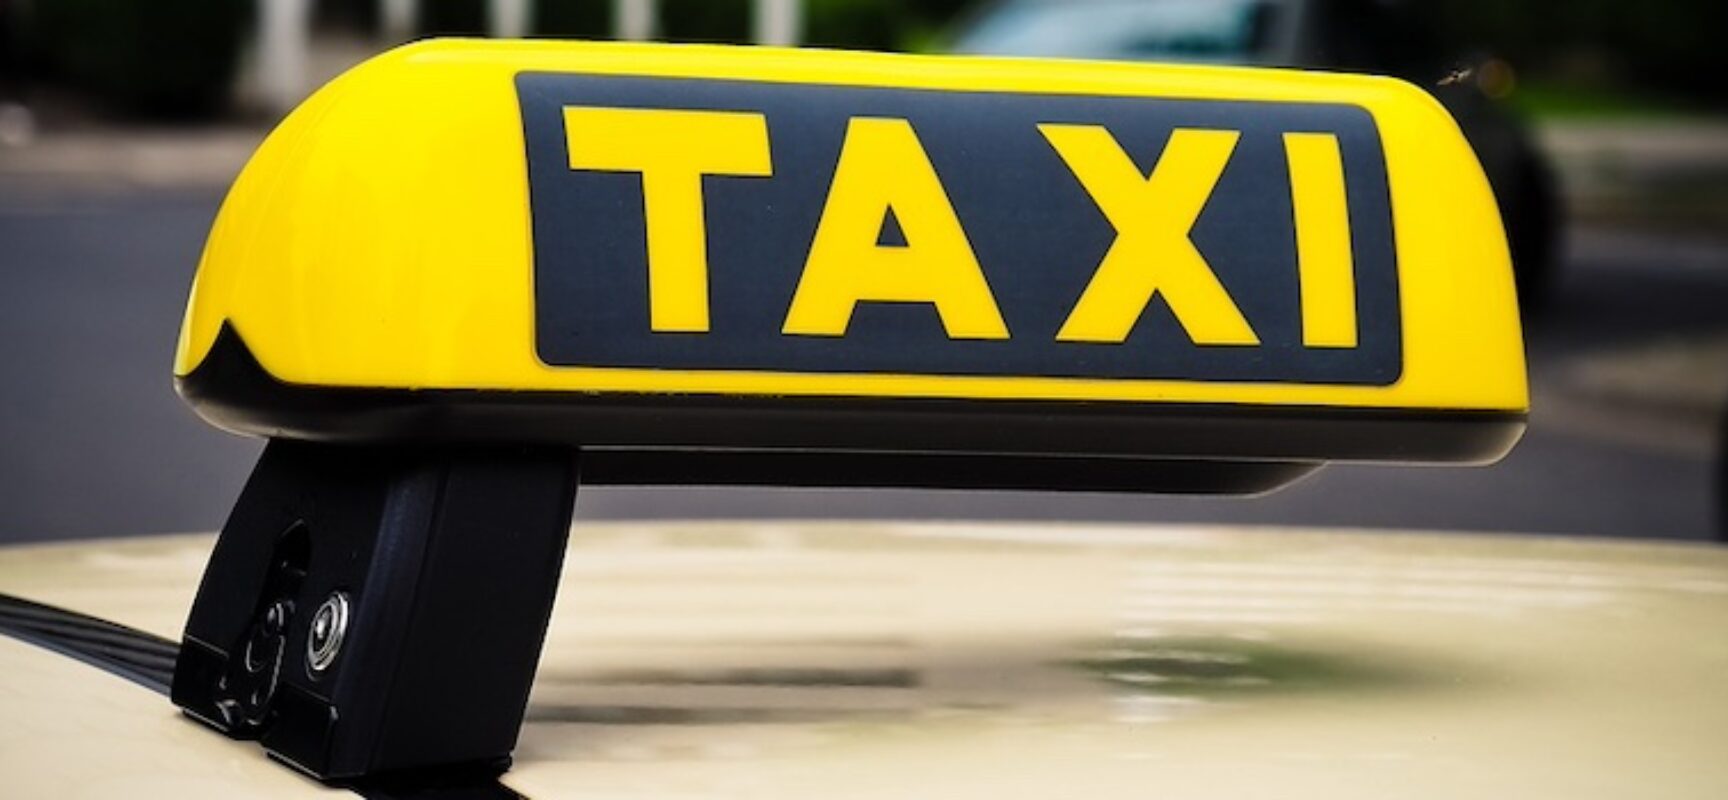 Indetto concorso pubblico per l’assegnazione di licenze per servizio taxi a Bisceglie / DETTAGLI